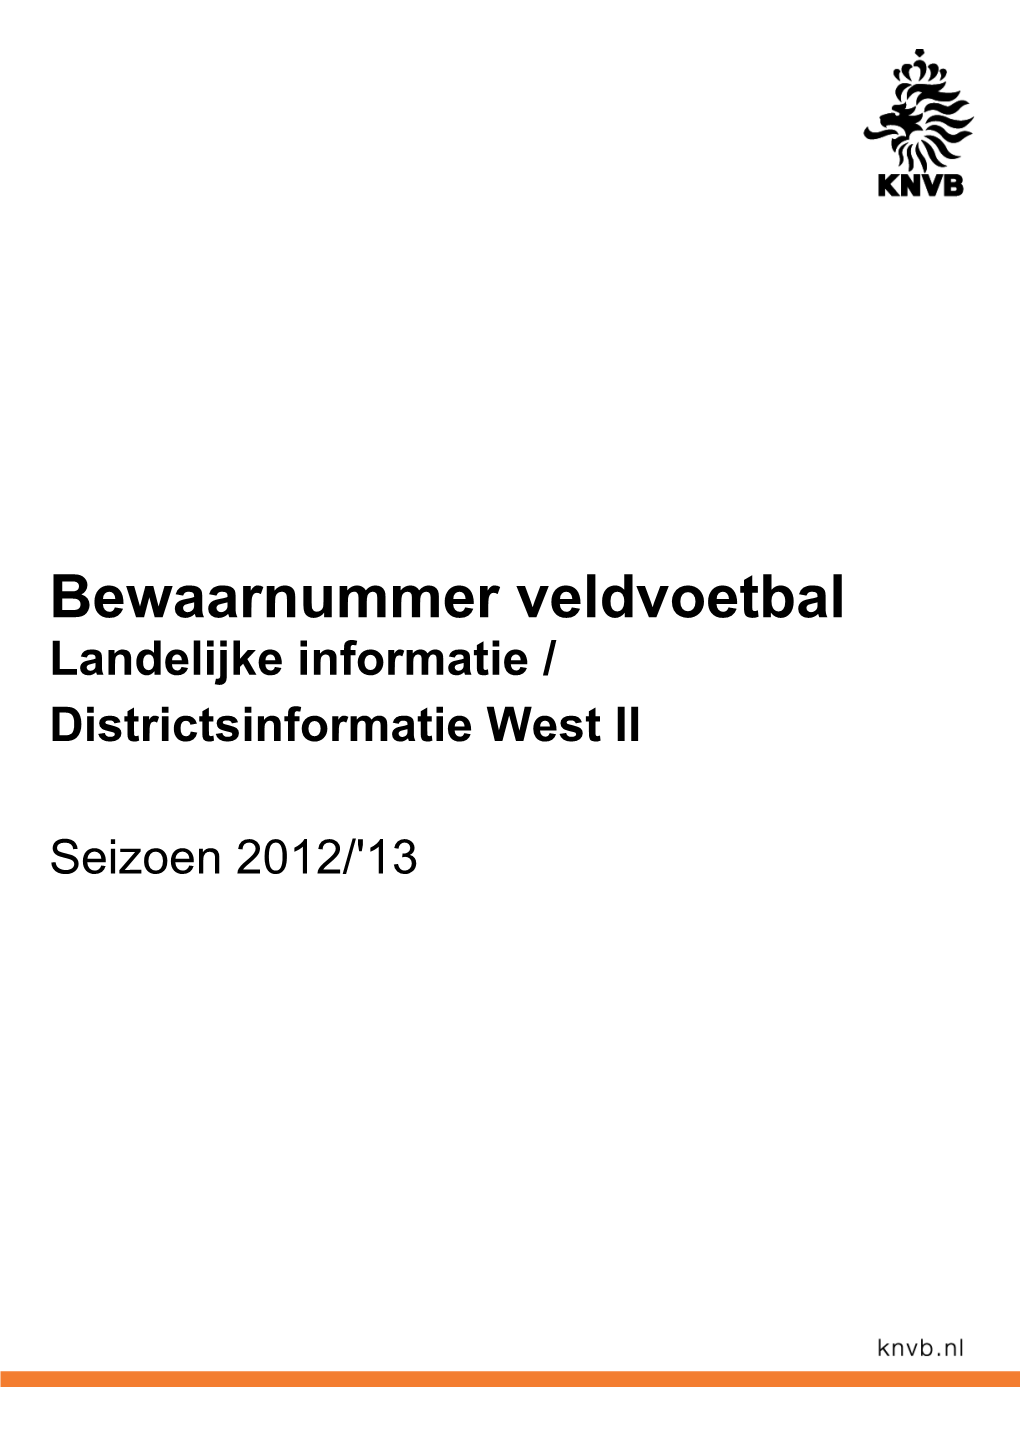 KNVB Bewaarnummer District West 2